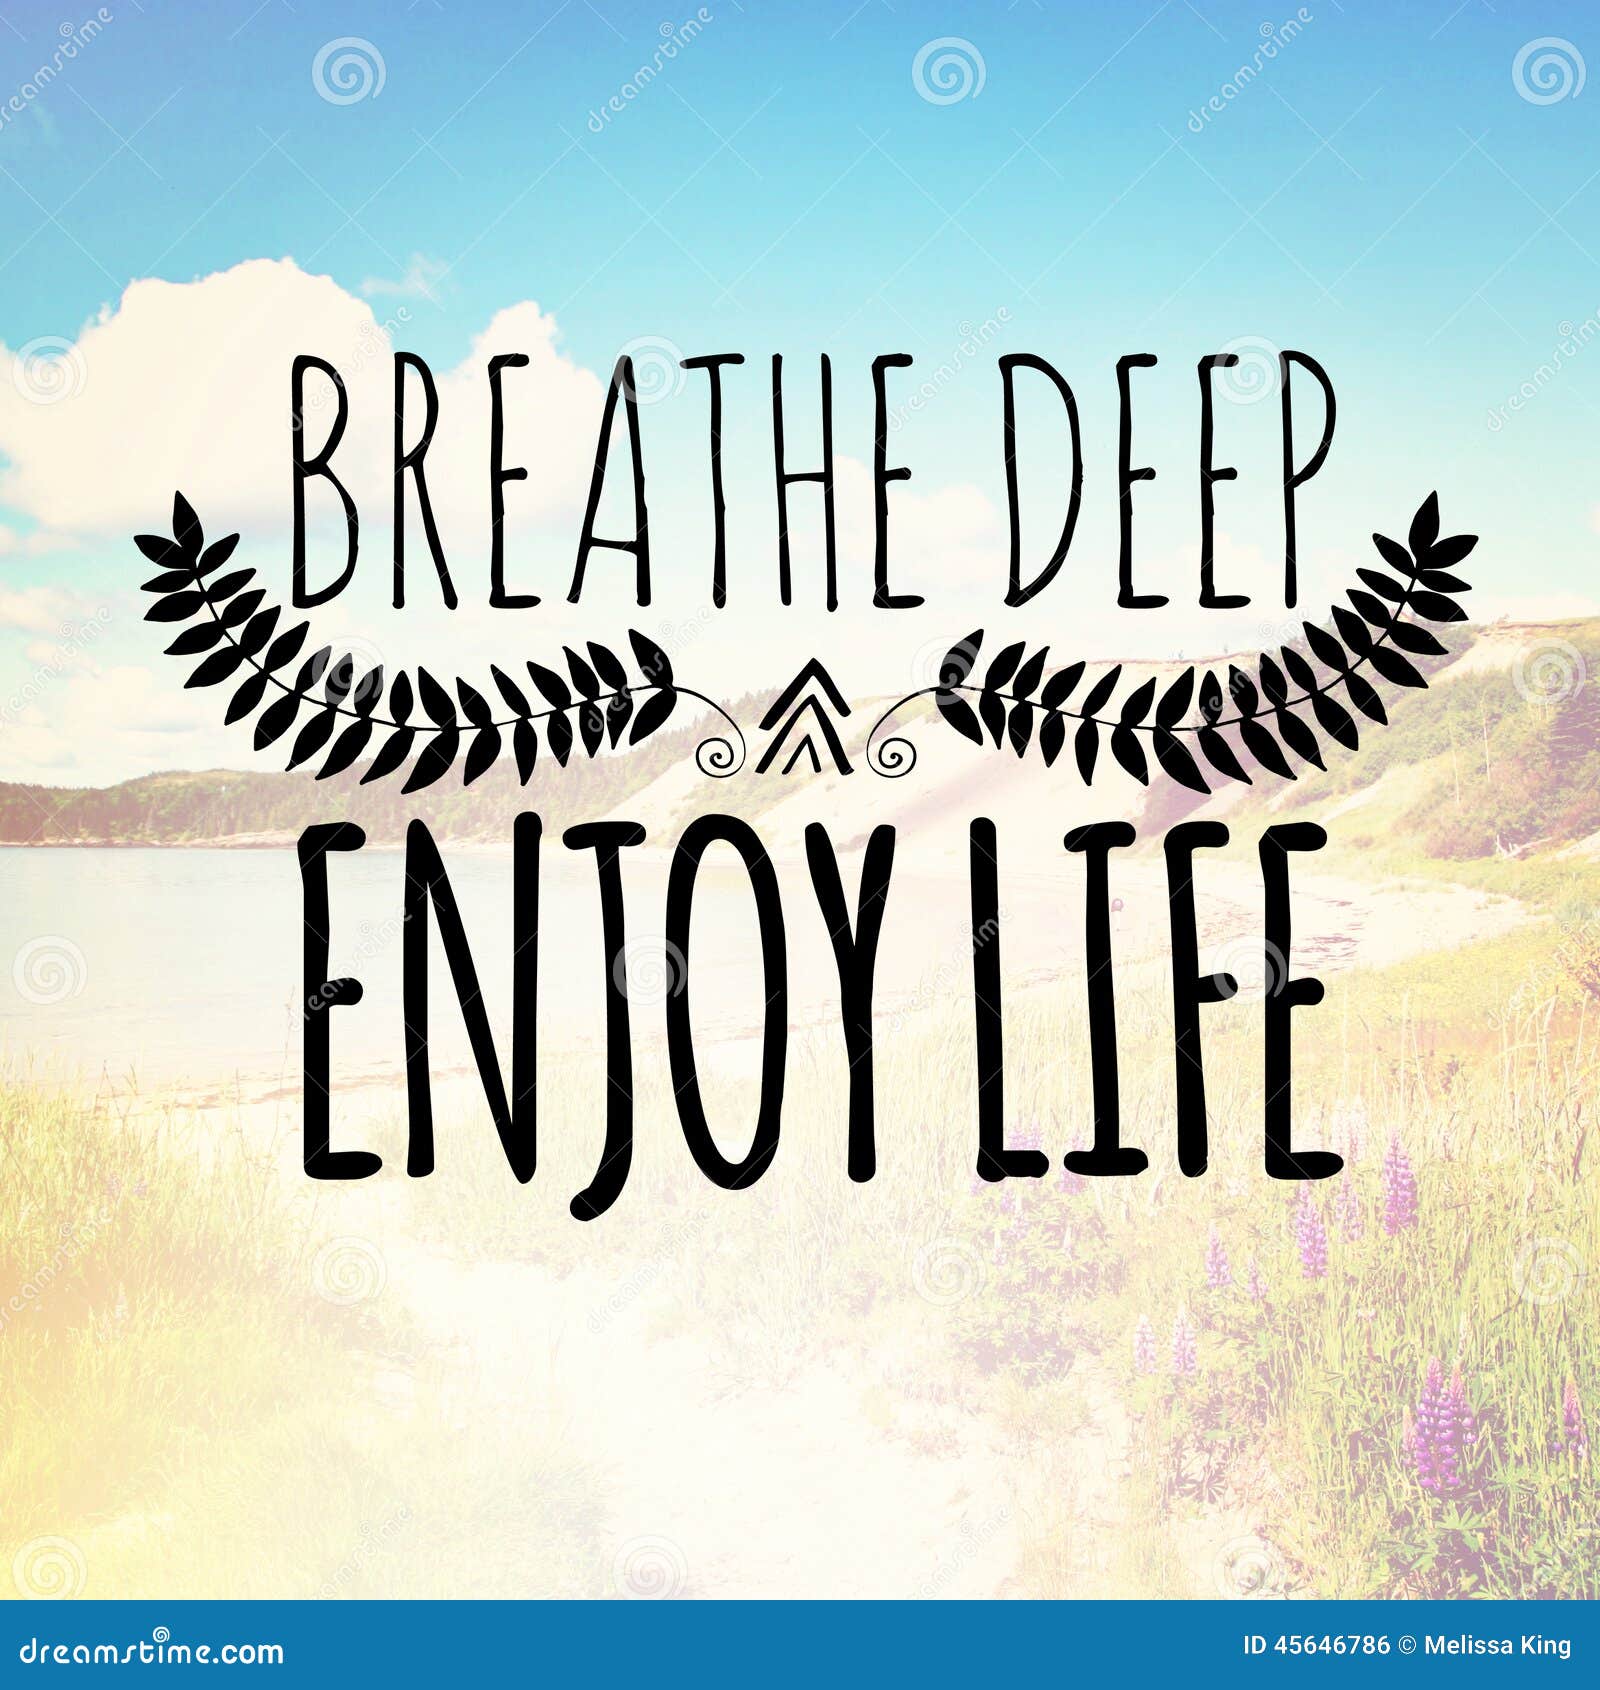 breathe deep enjoy life